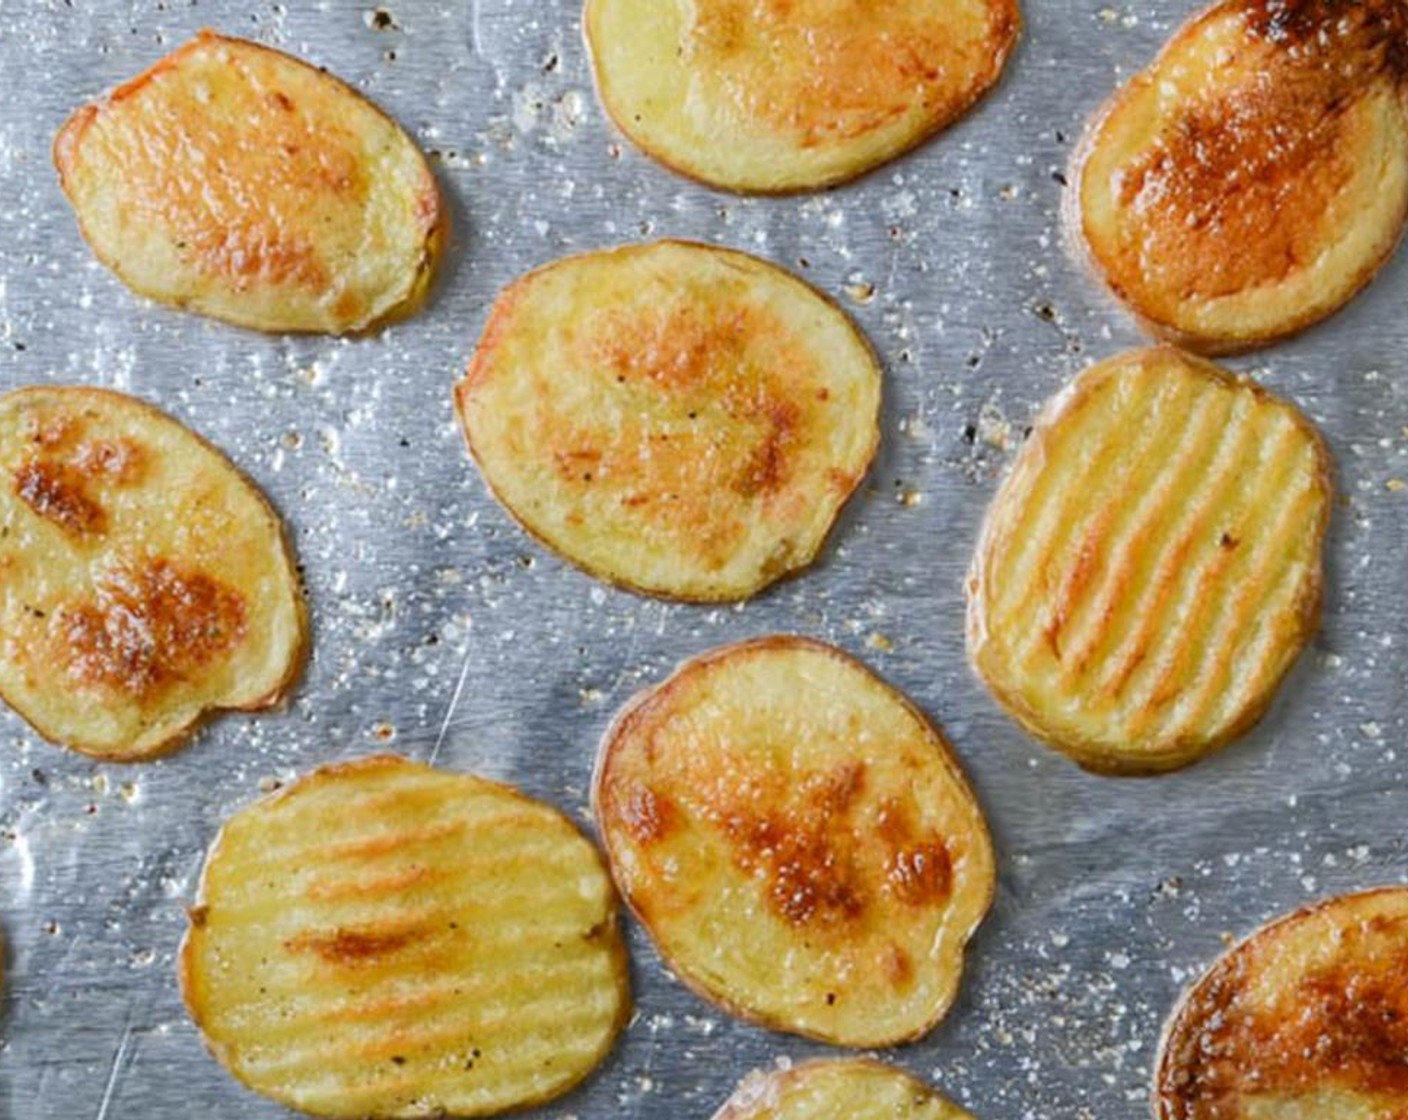 Schritt 5 Aus dem Ofen nehmen und die Kartoffeln umdrehen. Das Backblech wieder in den Ofen schieben und weitere 10-12 Minuten backen, bis die Kartoffeln golden und knusprig sind. Aus dem Ofen nehmen und beiseite stellen.